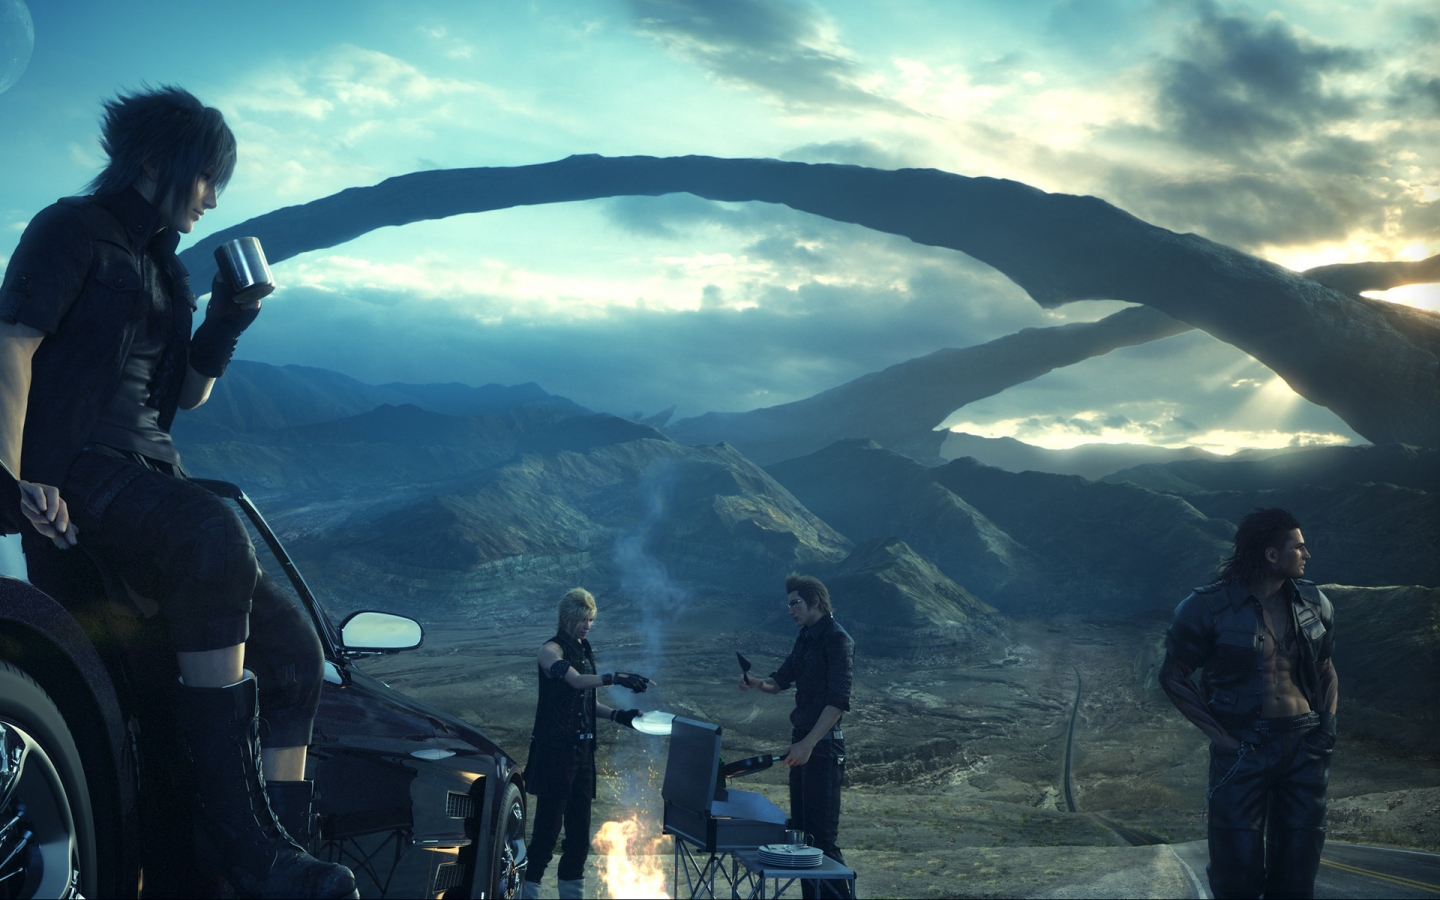 Final Fantasy XV Scene for 1440 x 900 widescreen resolution